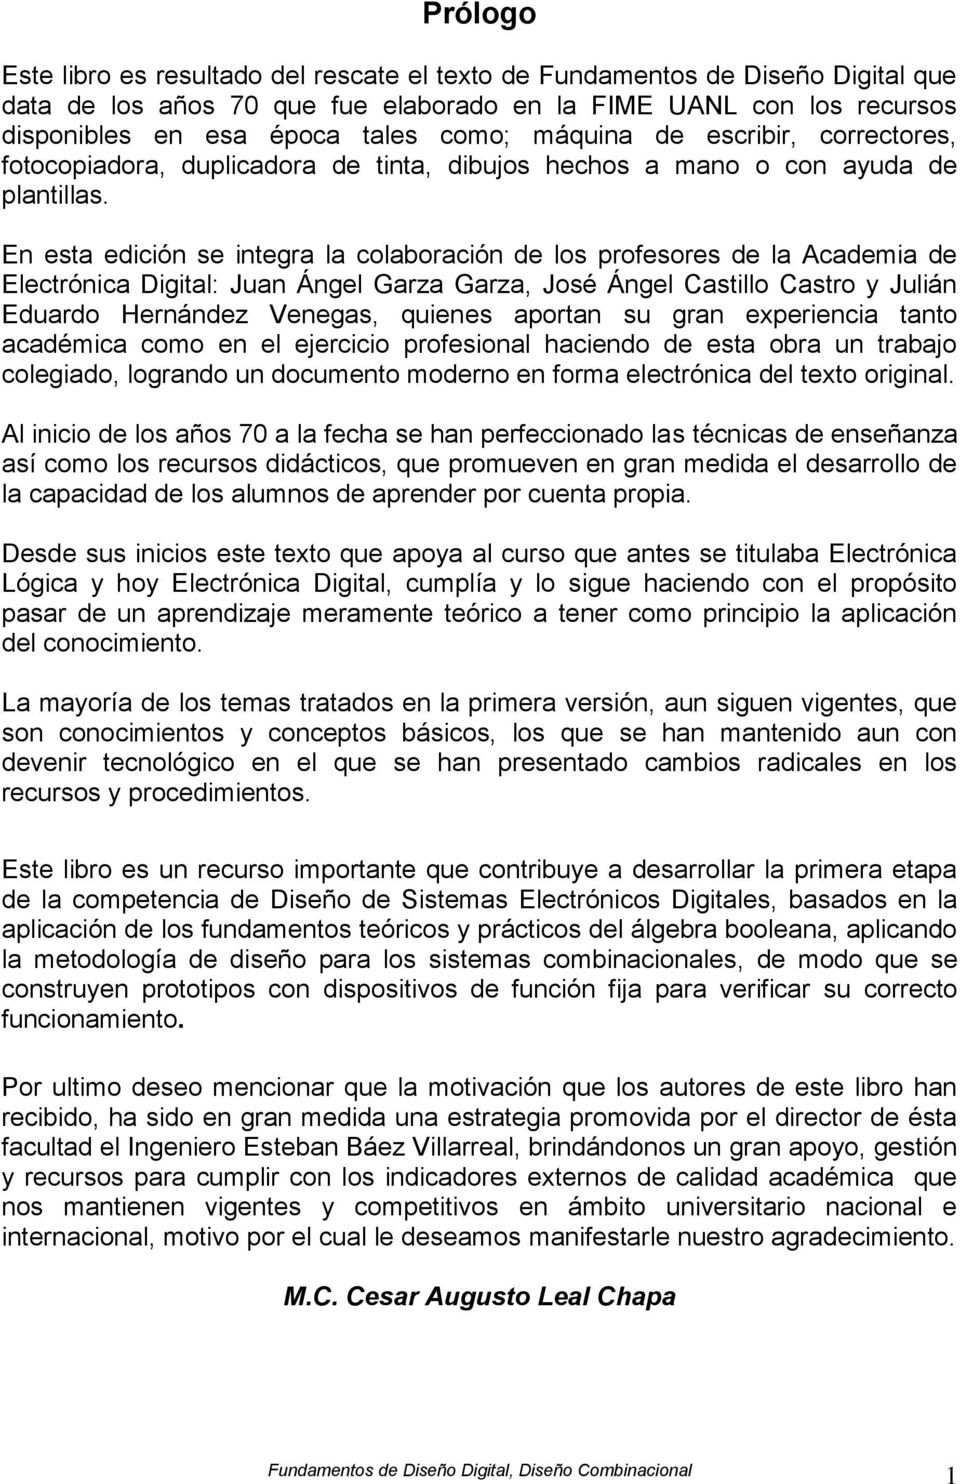 En esta edición se integra la colaboración de los profesores de la Academia de Electrónica Digital: Juan Ángel Garza Garza, José Ángel Castillo Castro y Julián Eduardo Hernández Venegas, quienes